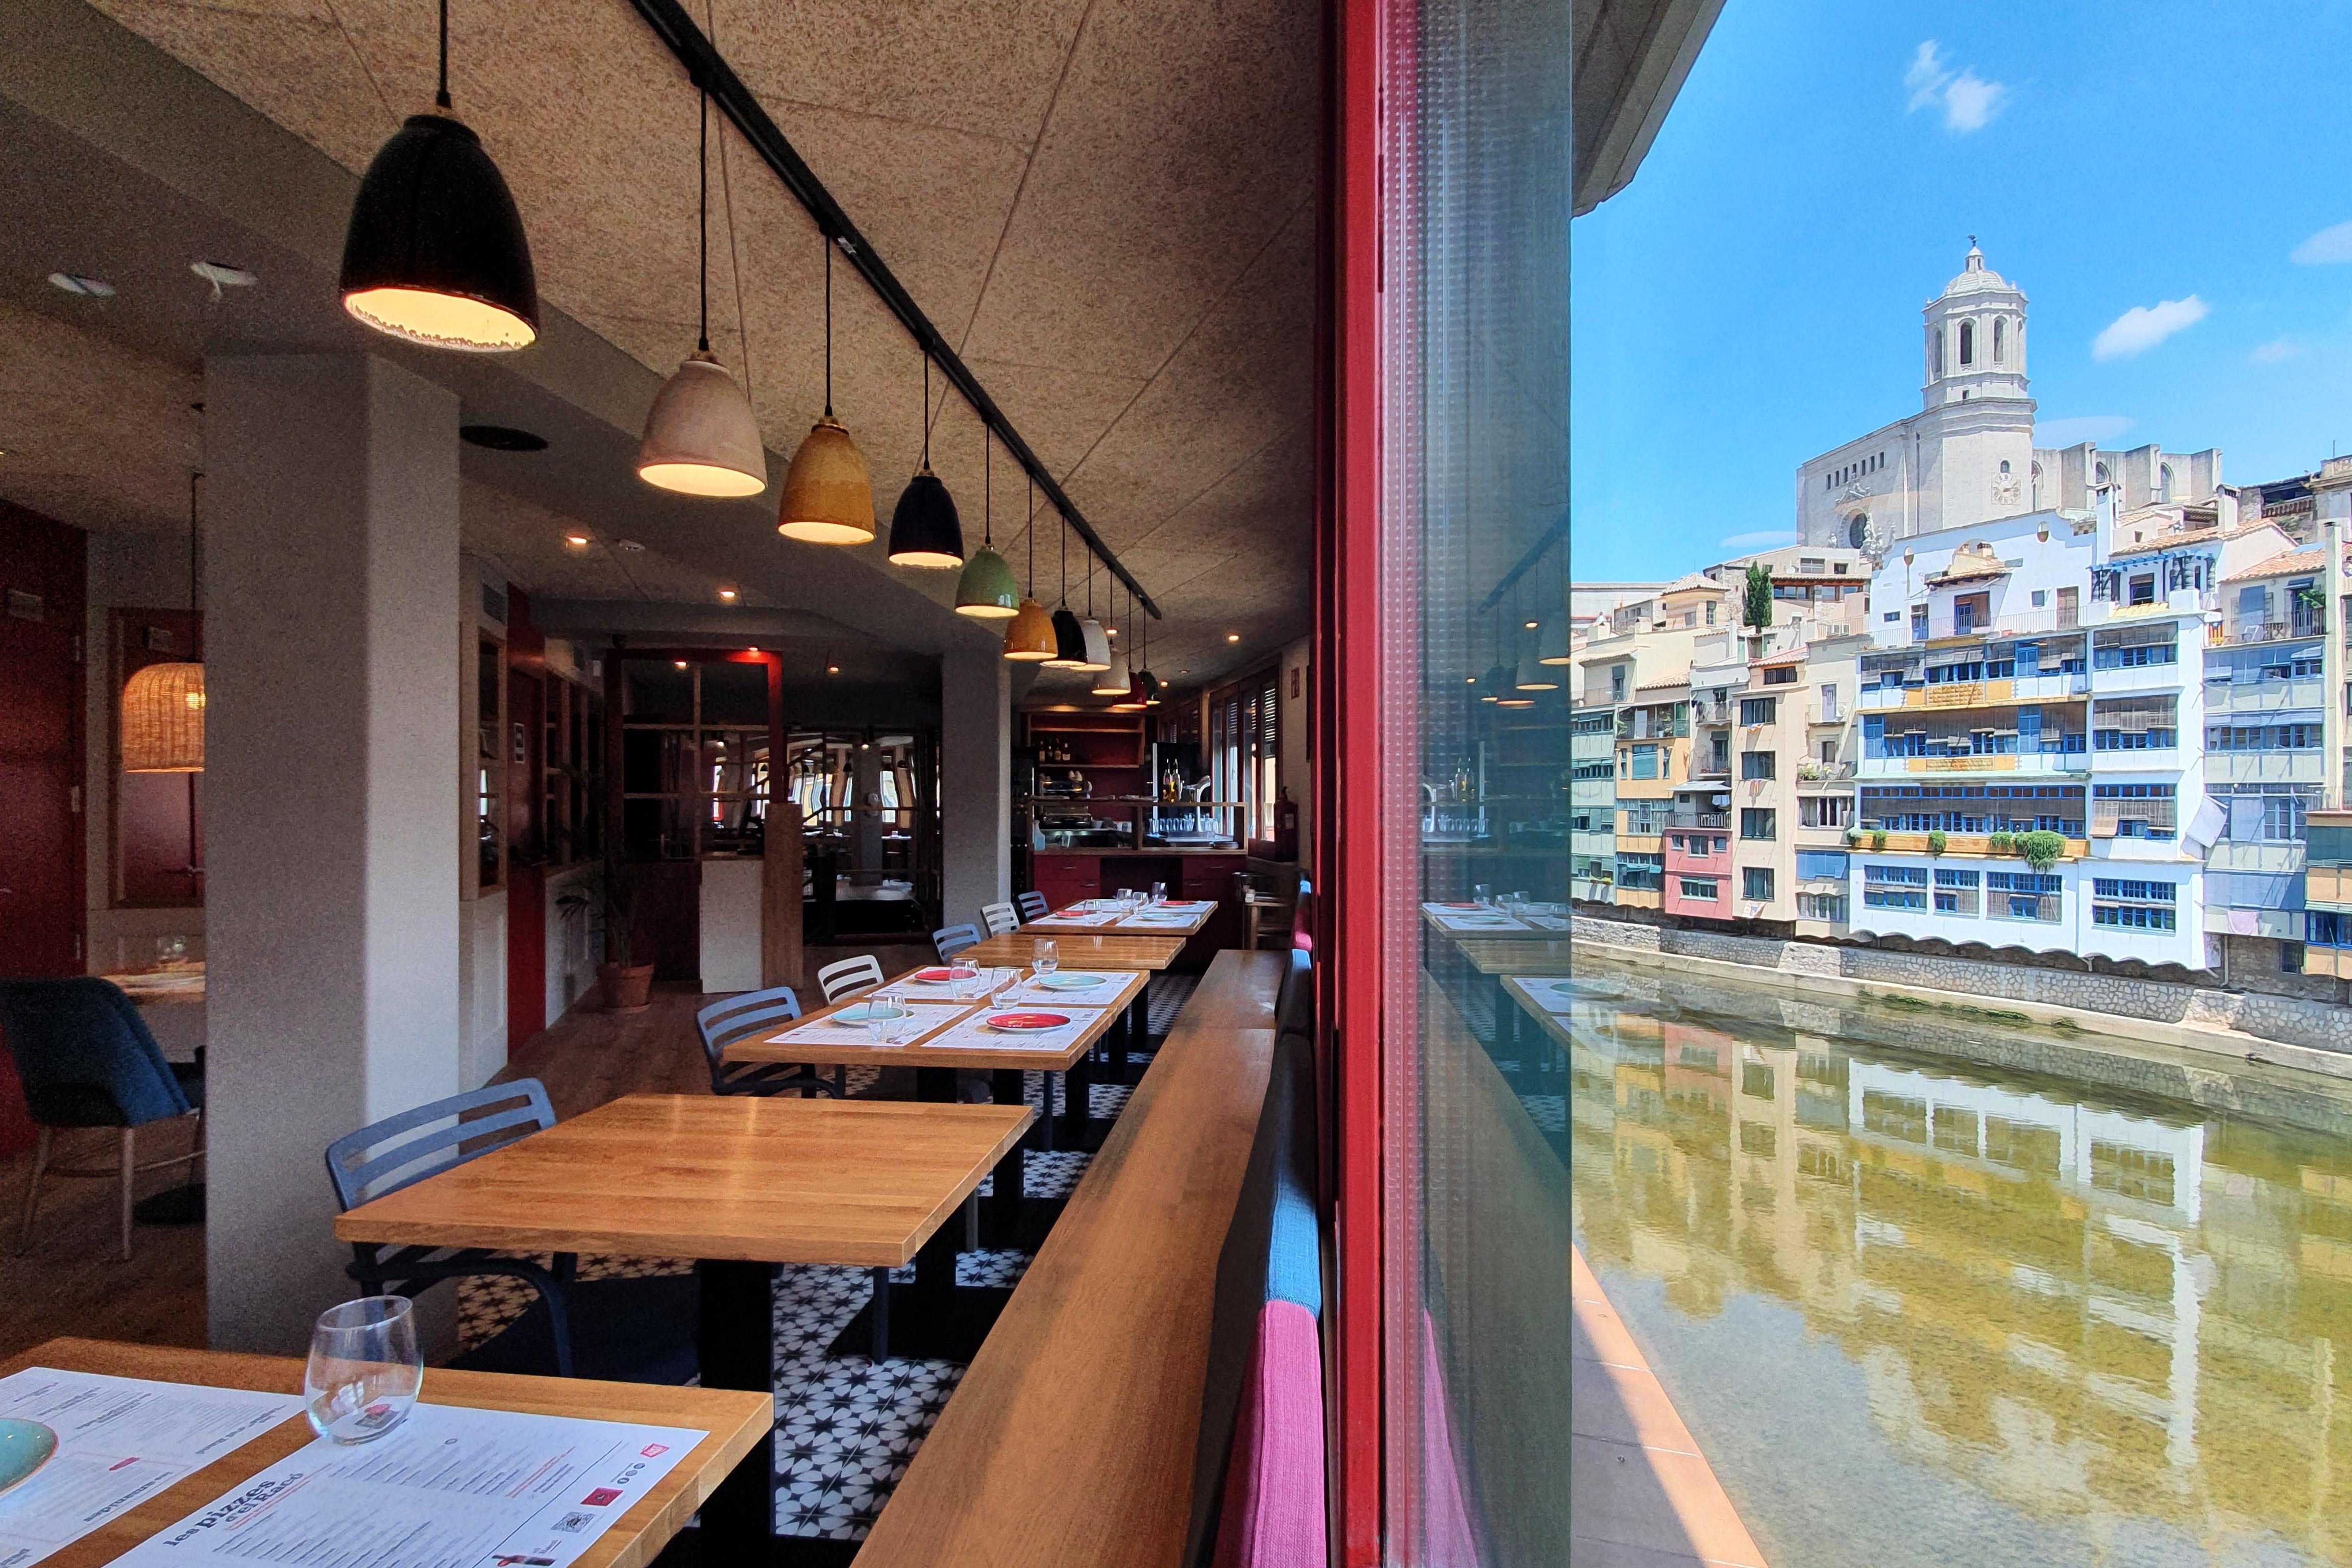 Visió del restaurant; a l'esquerra les taules, i la dreta una finestra a través de la qual es veu el riu, les cases  de colors, amb la catedral al fons